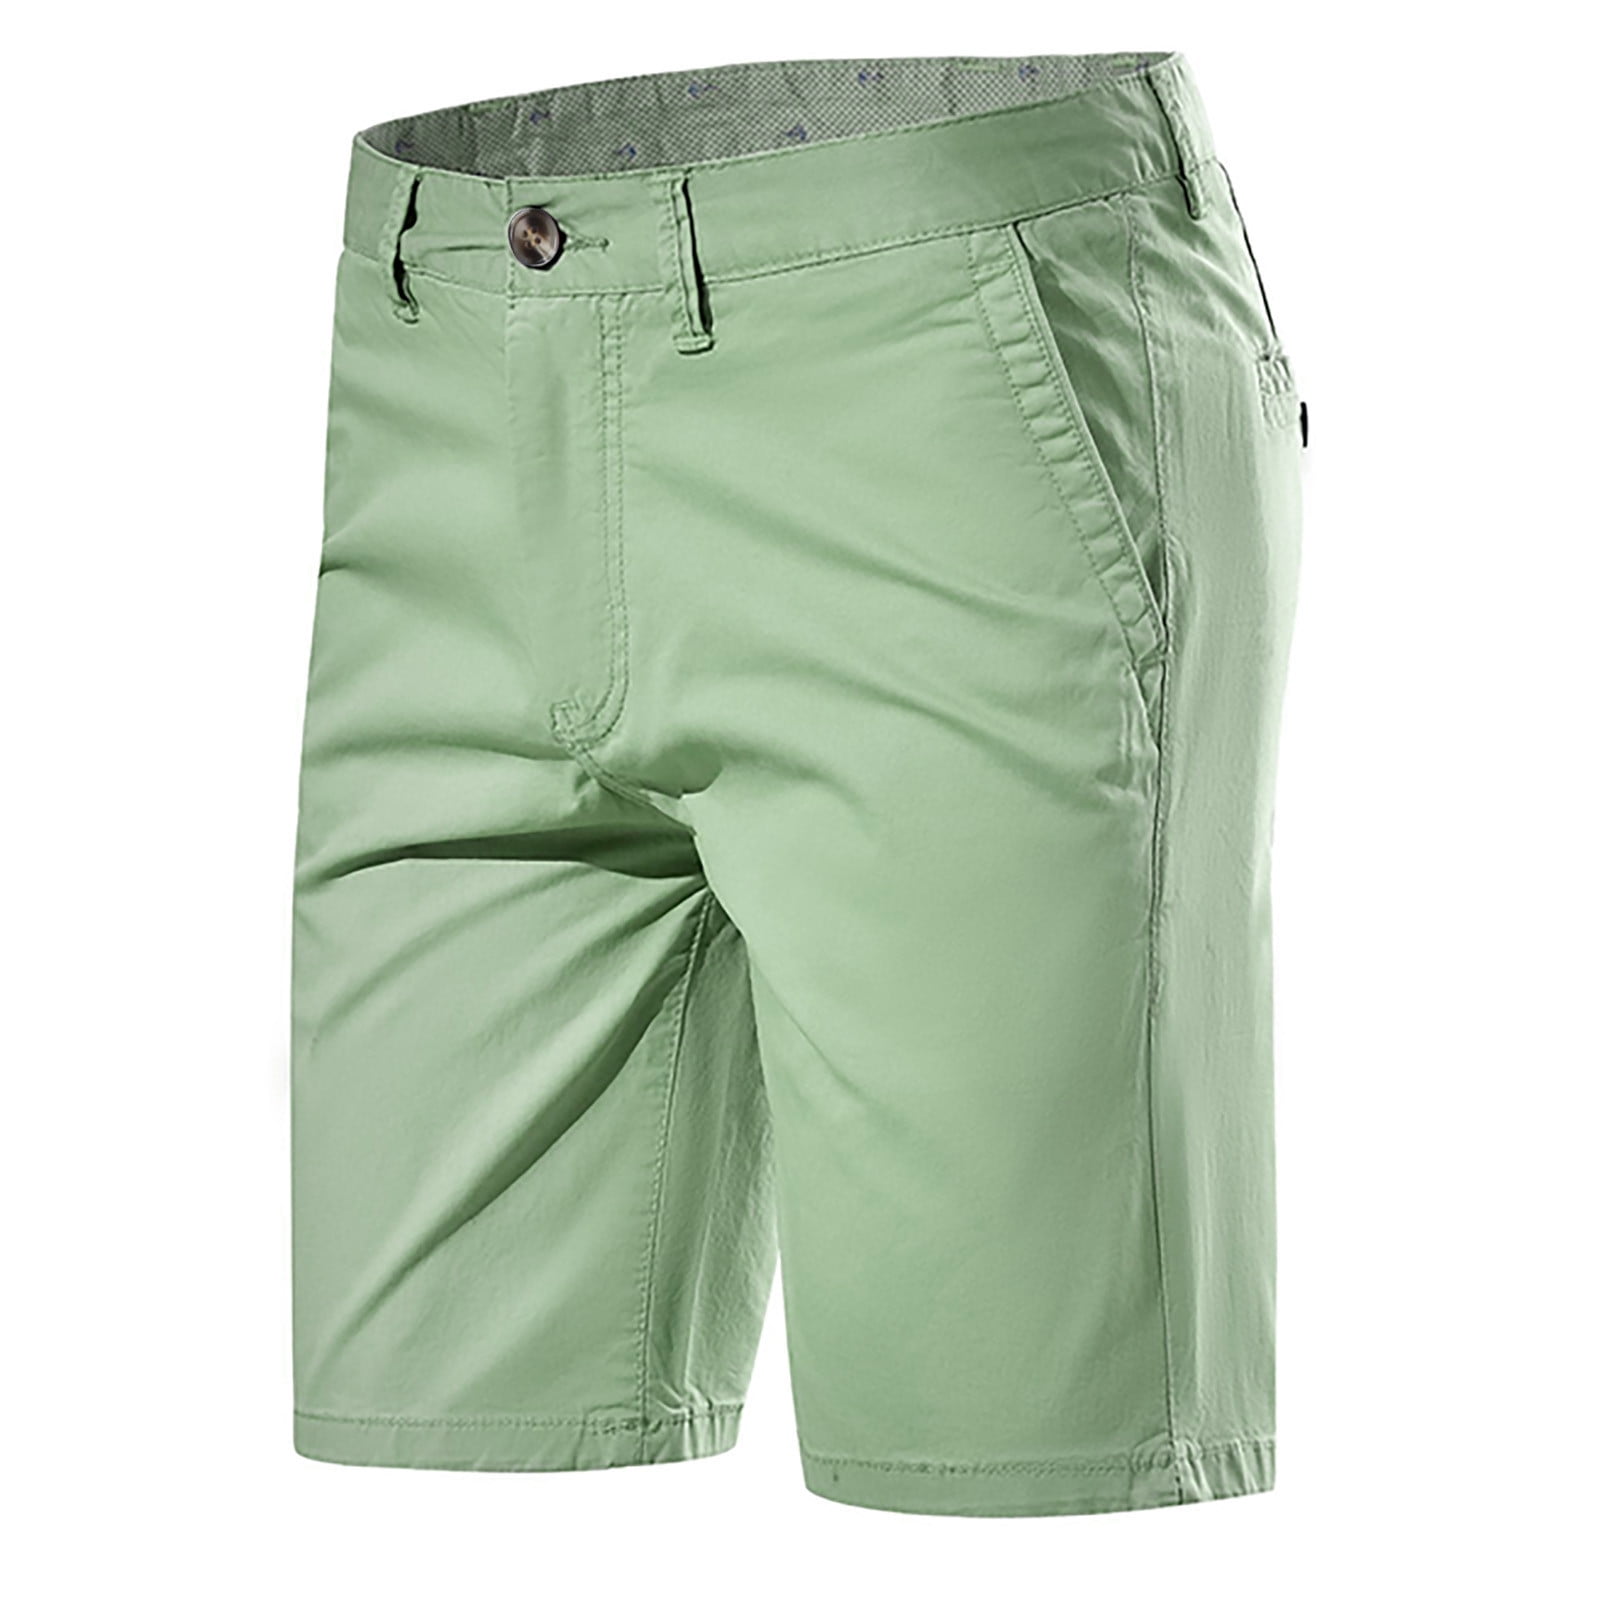 Homadles Men's and Big Men's Shorts- Shorts Green Size XL - Walmart.com